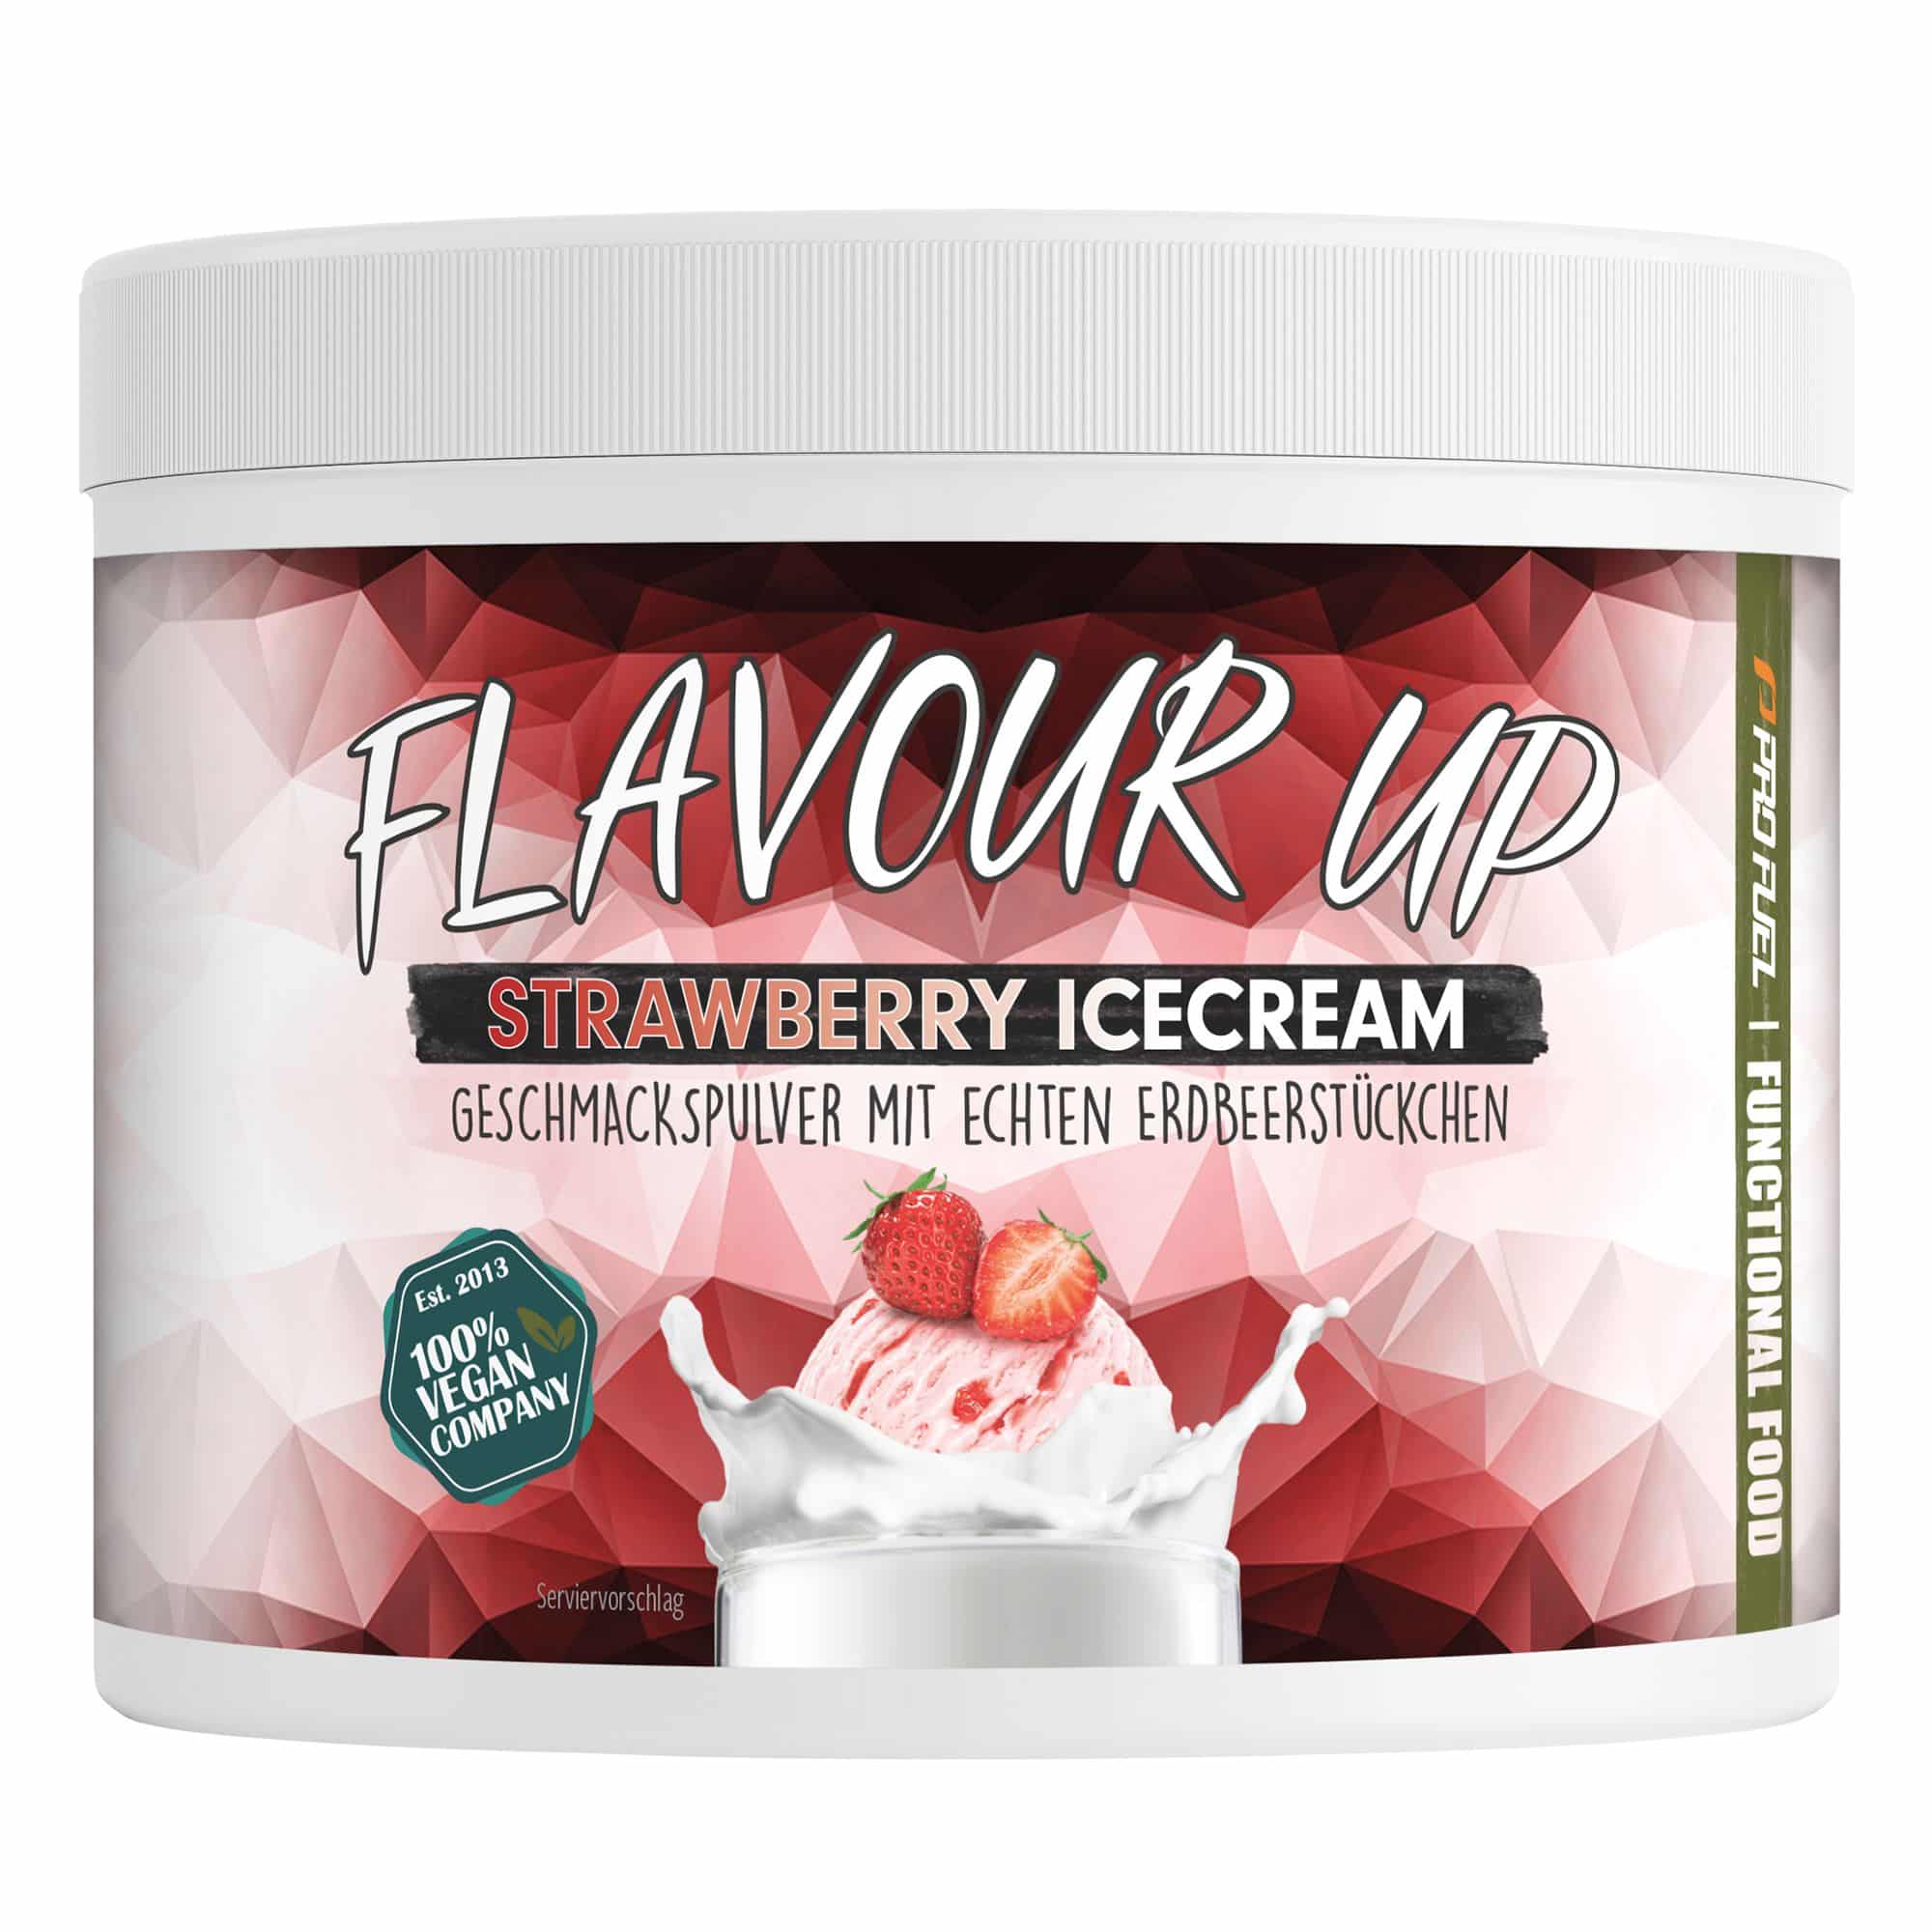 ProFuel - Flavour UP Geschmackspulver - Strawberry Icecream - nur 9 kcal pro Portion